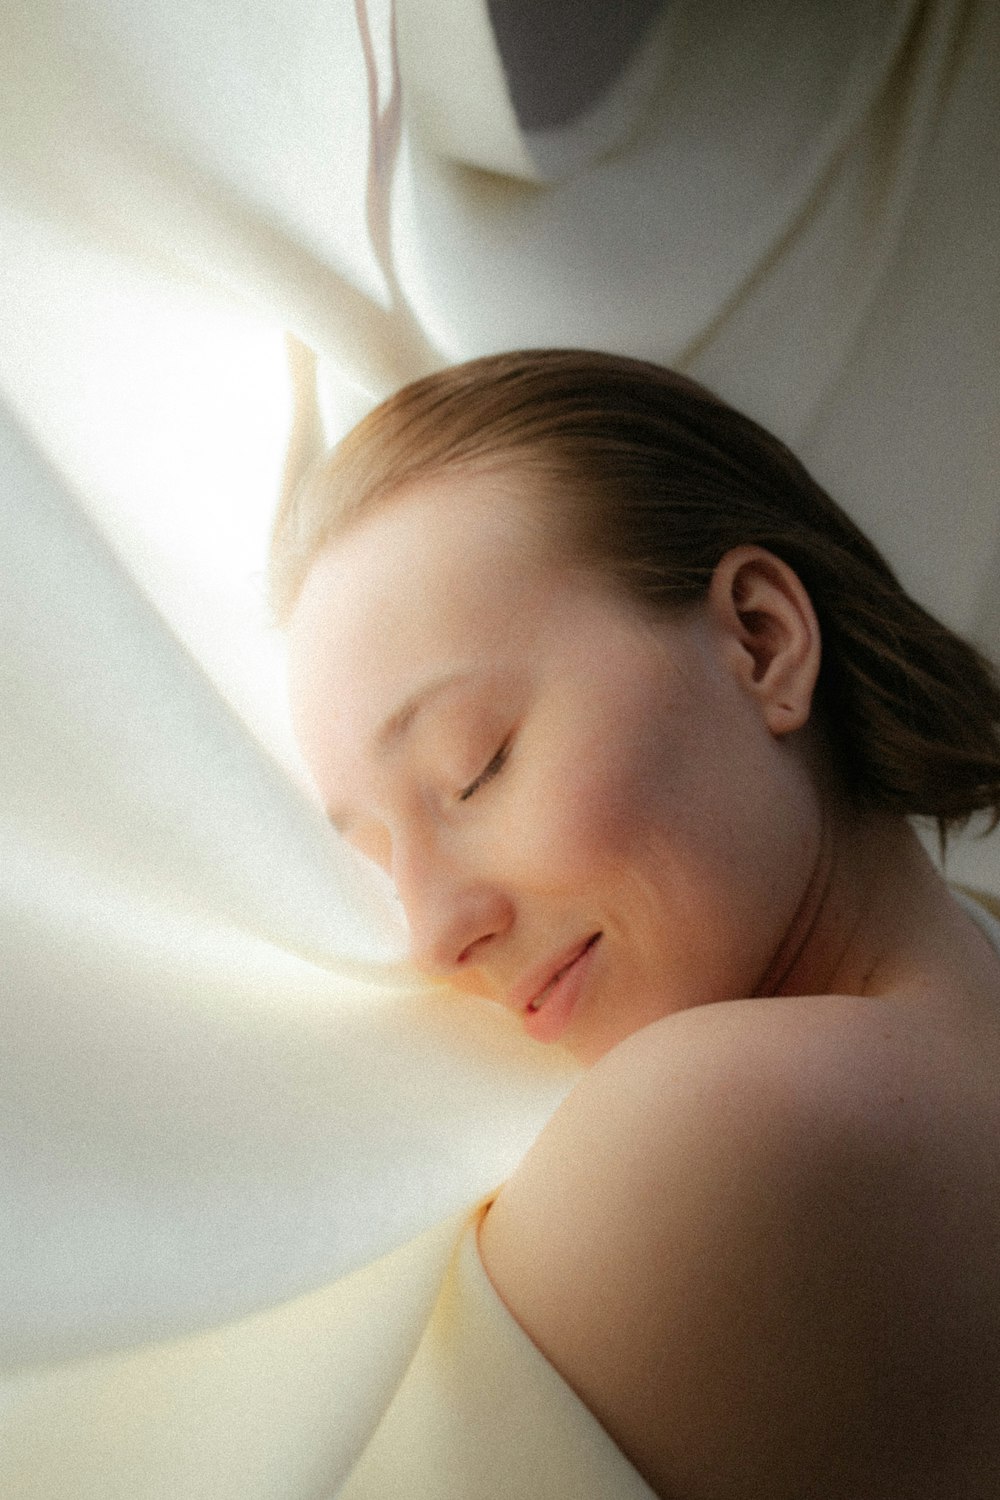 a person lying in a bathtub